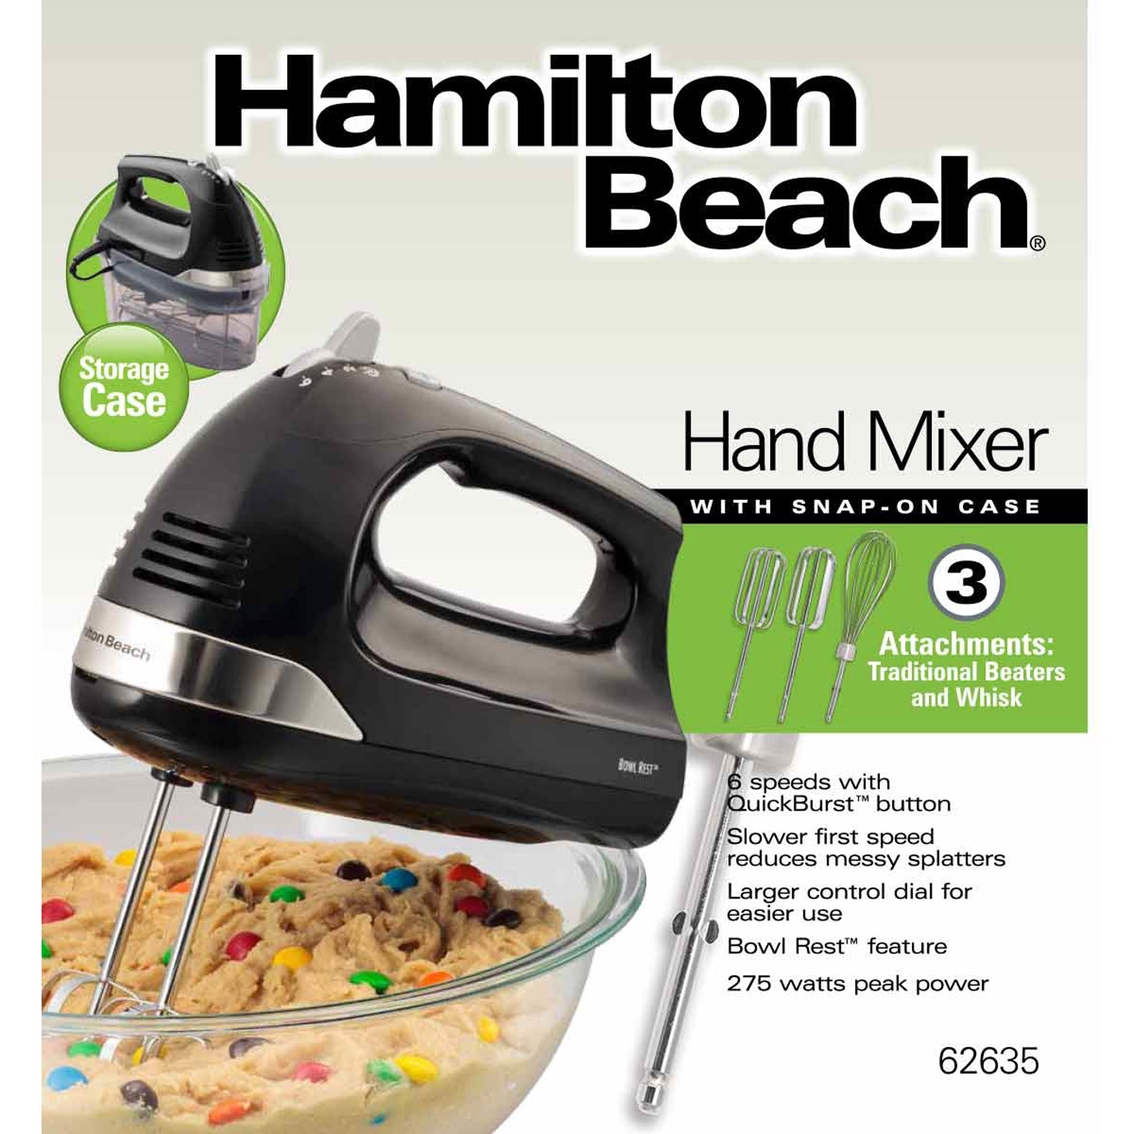 Hamilton Beach 6 Speed Hand Mixer, Quick Burst, Storage Case, New